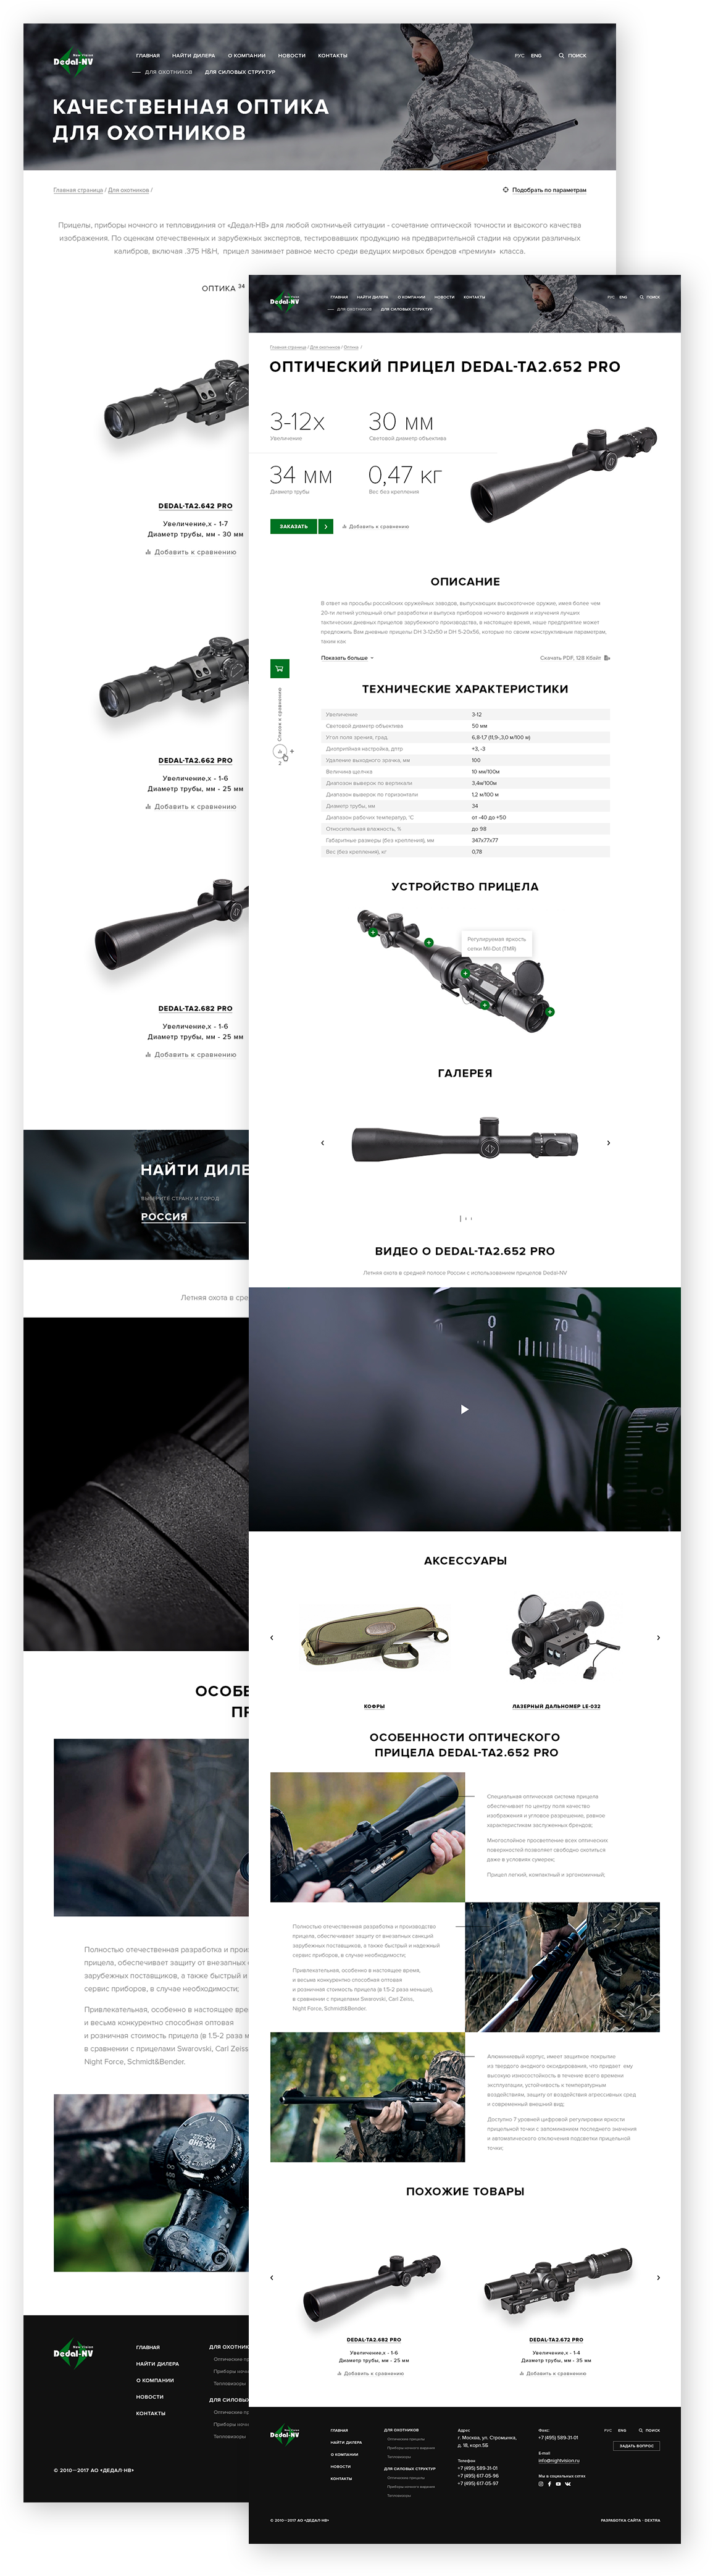 Сайт оружейной оптики «Дедал-НВ» - внутренние страницы